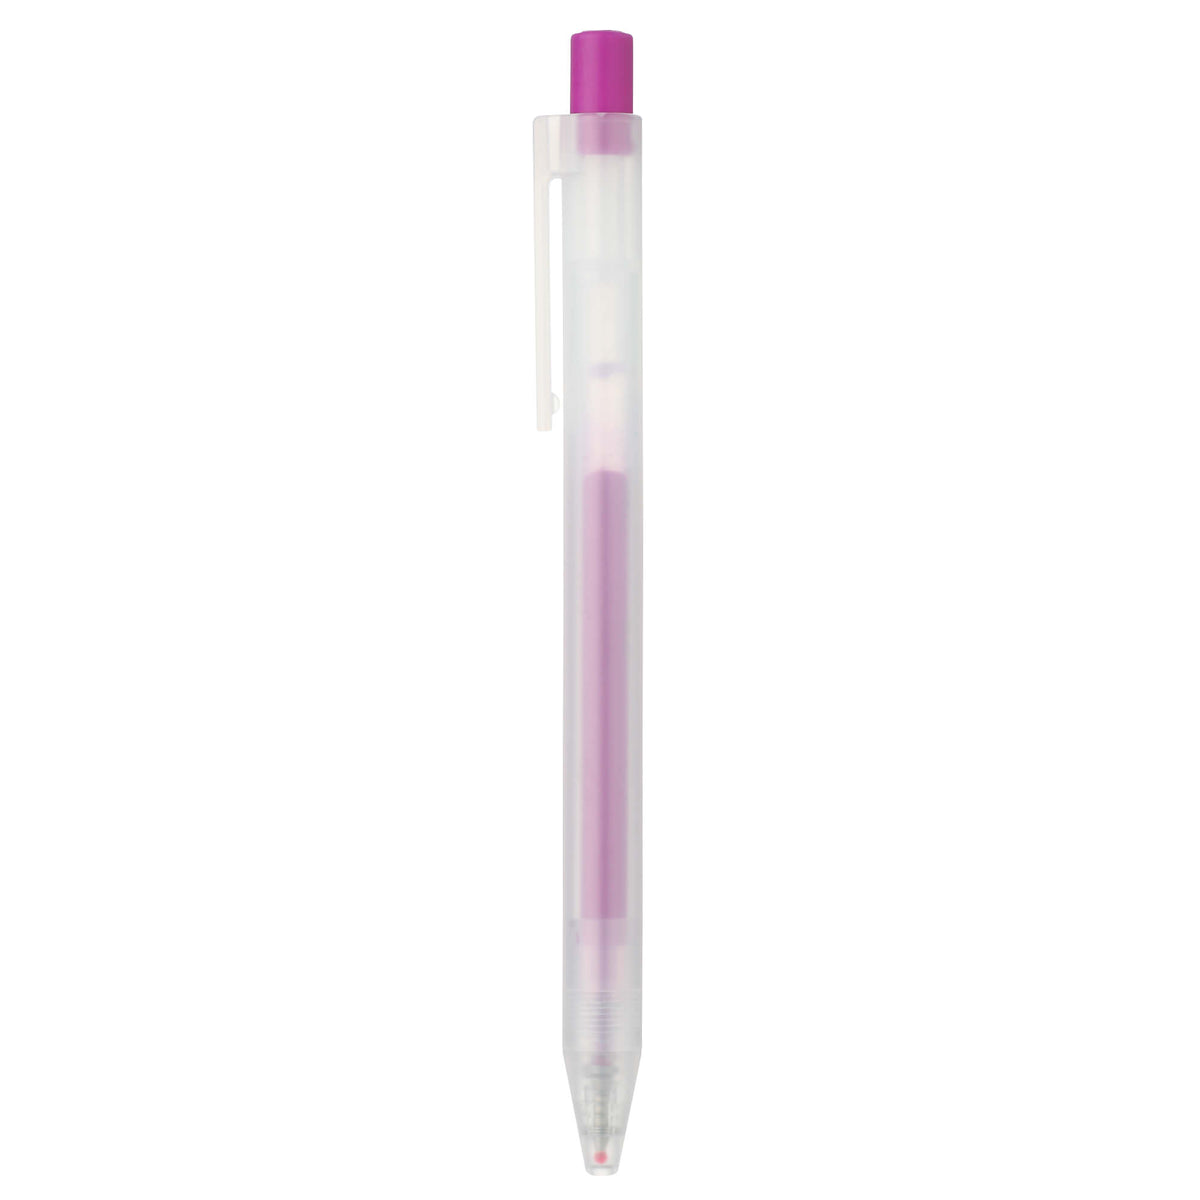 Muji gel pen, 0.5mm purple version